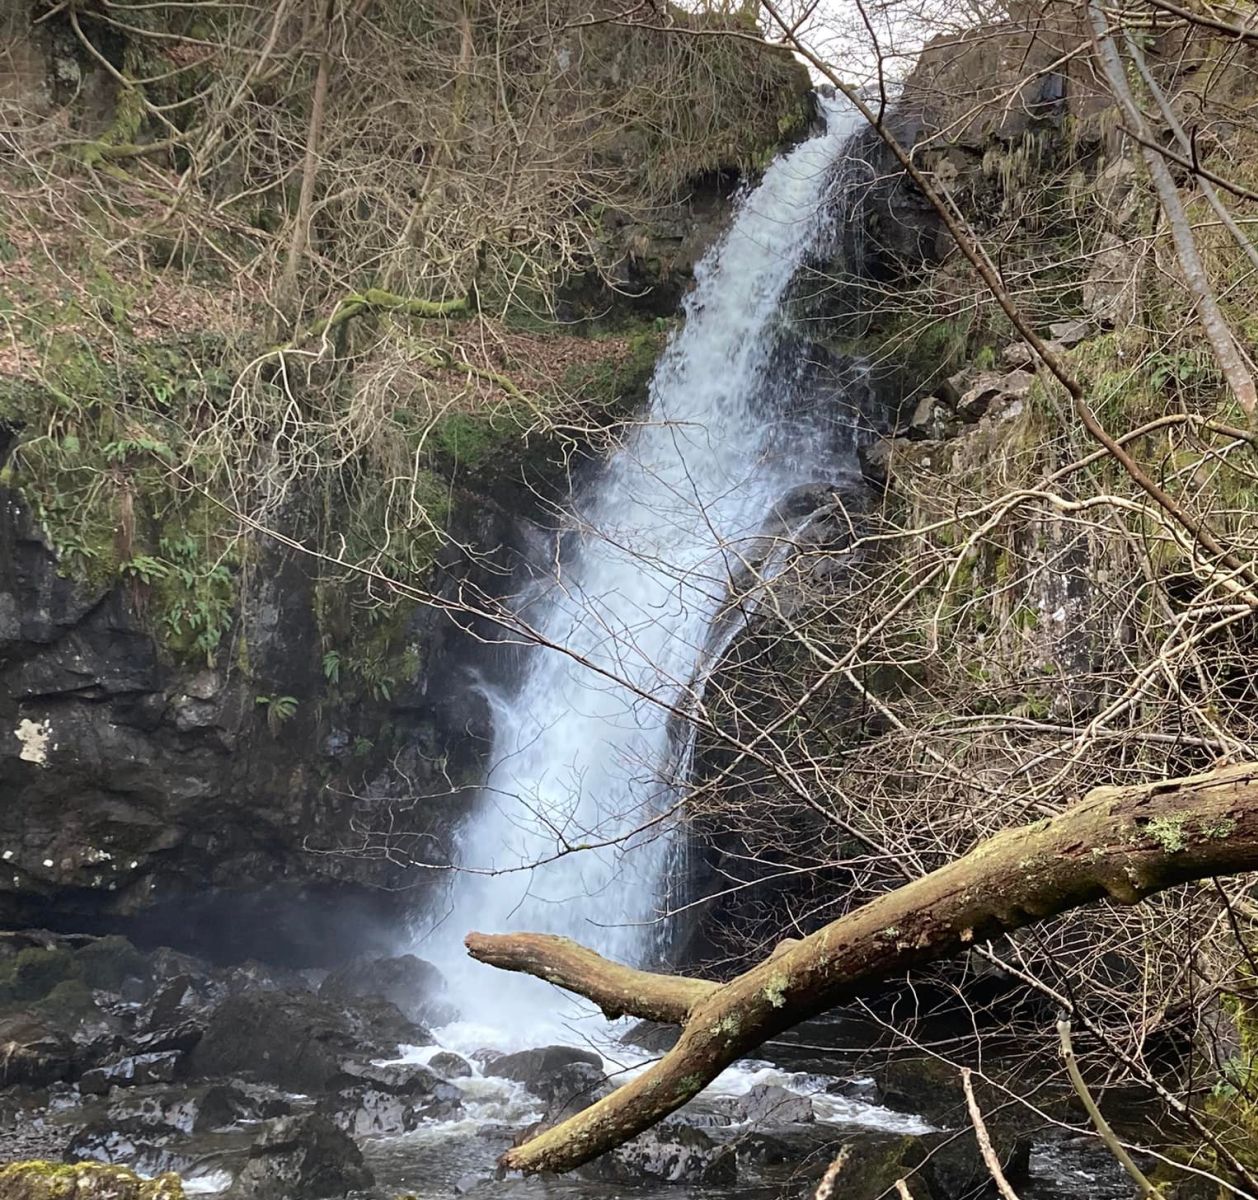 White Spout Waterfall on Finglen Burn in Campsie Glen